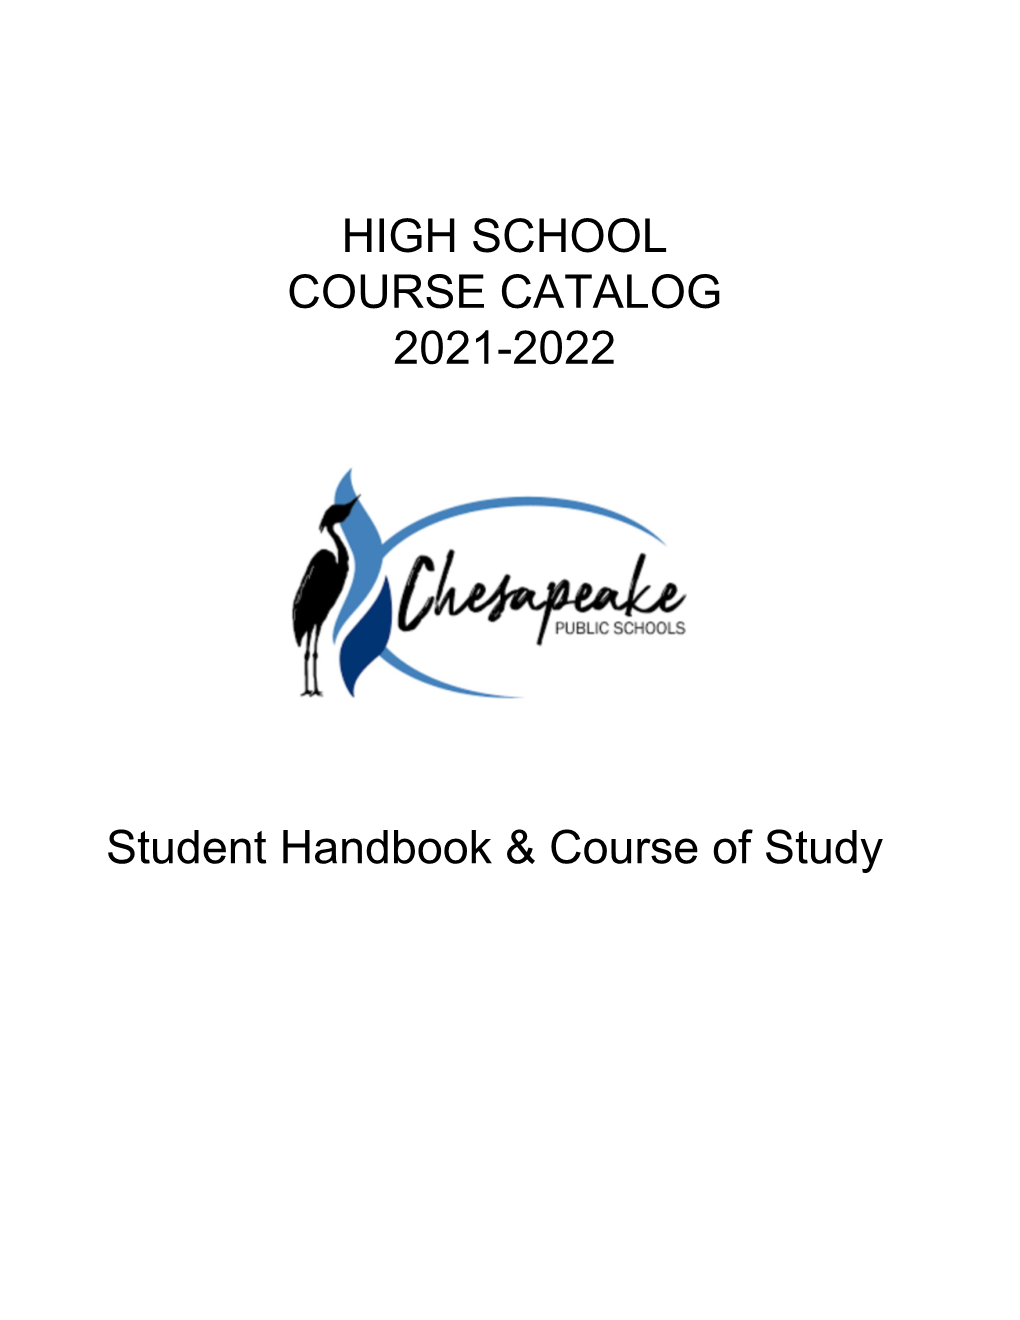 High School Course Catalog 2021-2022